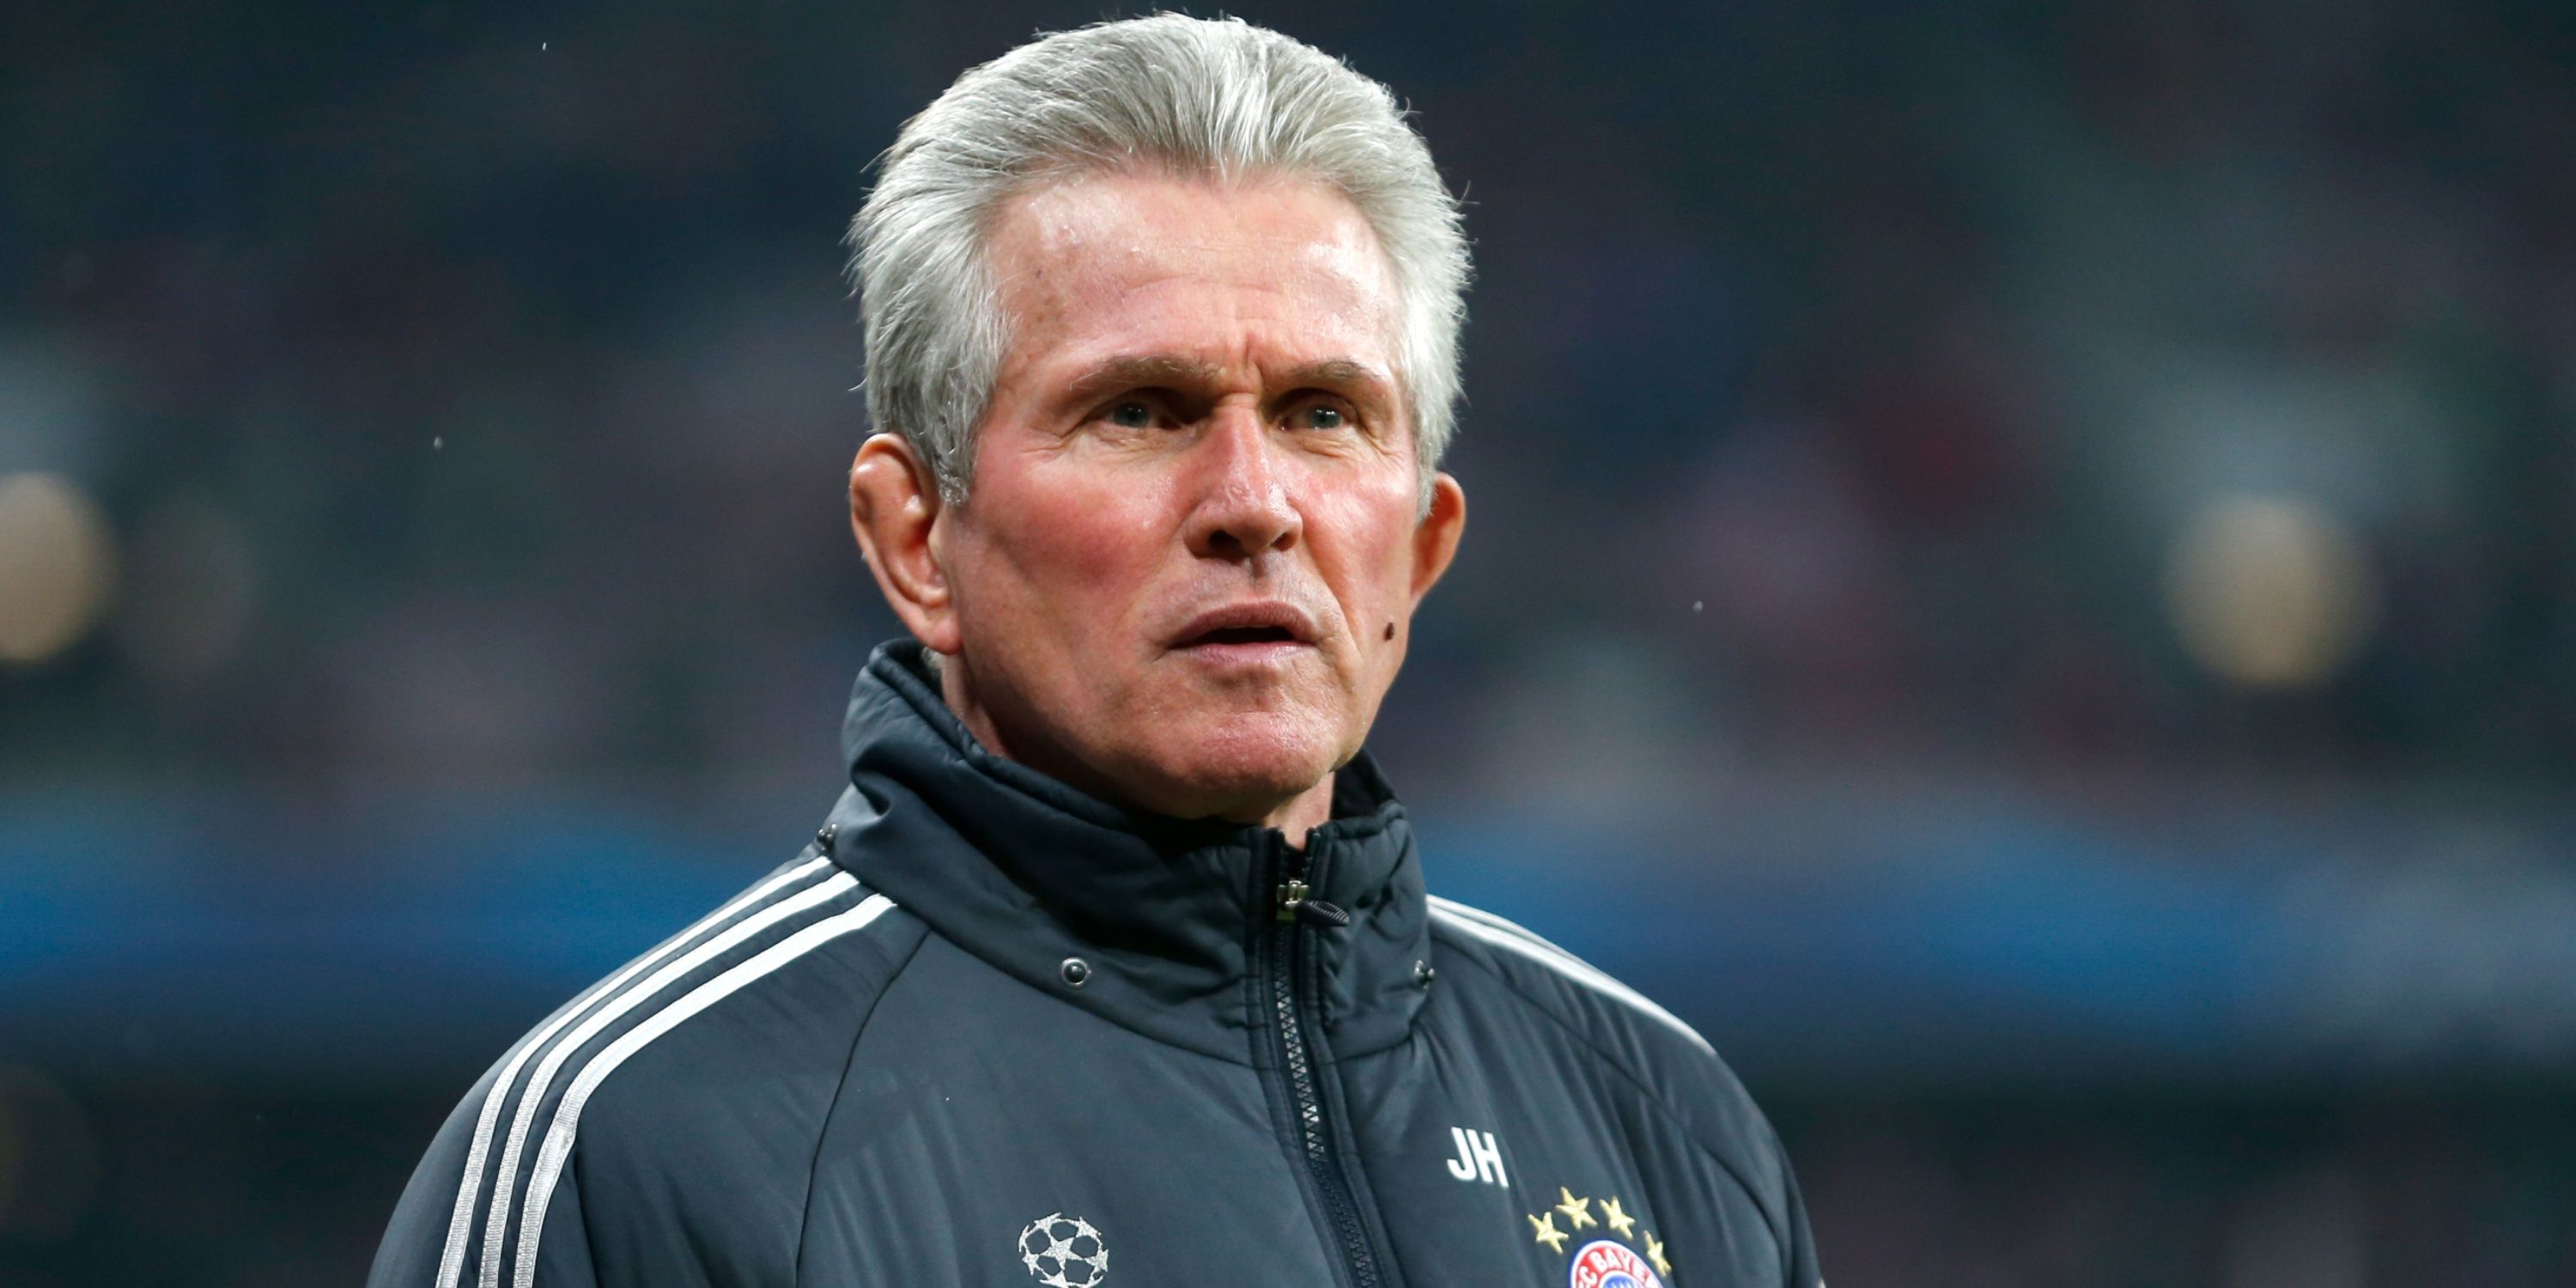 Bayern Munich coach Jupp Heynckes looks on